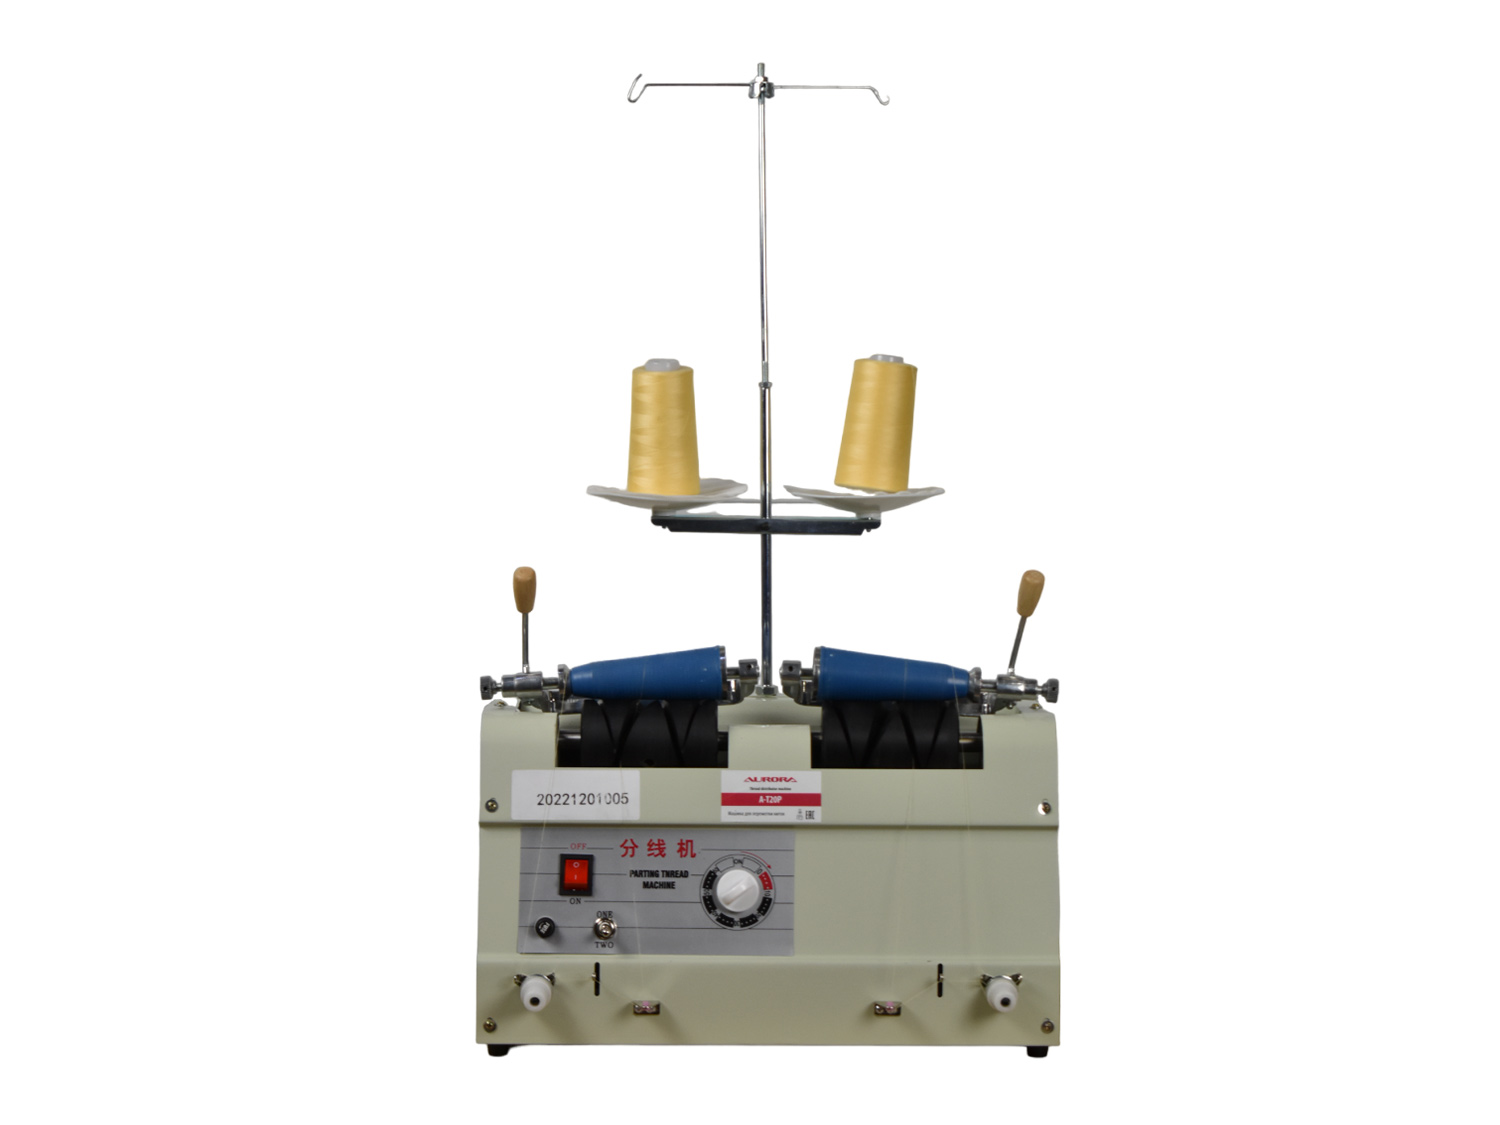 Автоматическое устройство для перемотки швейных ниток Aurora A-T20P